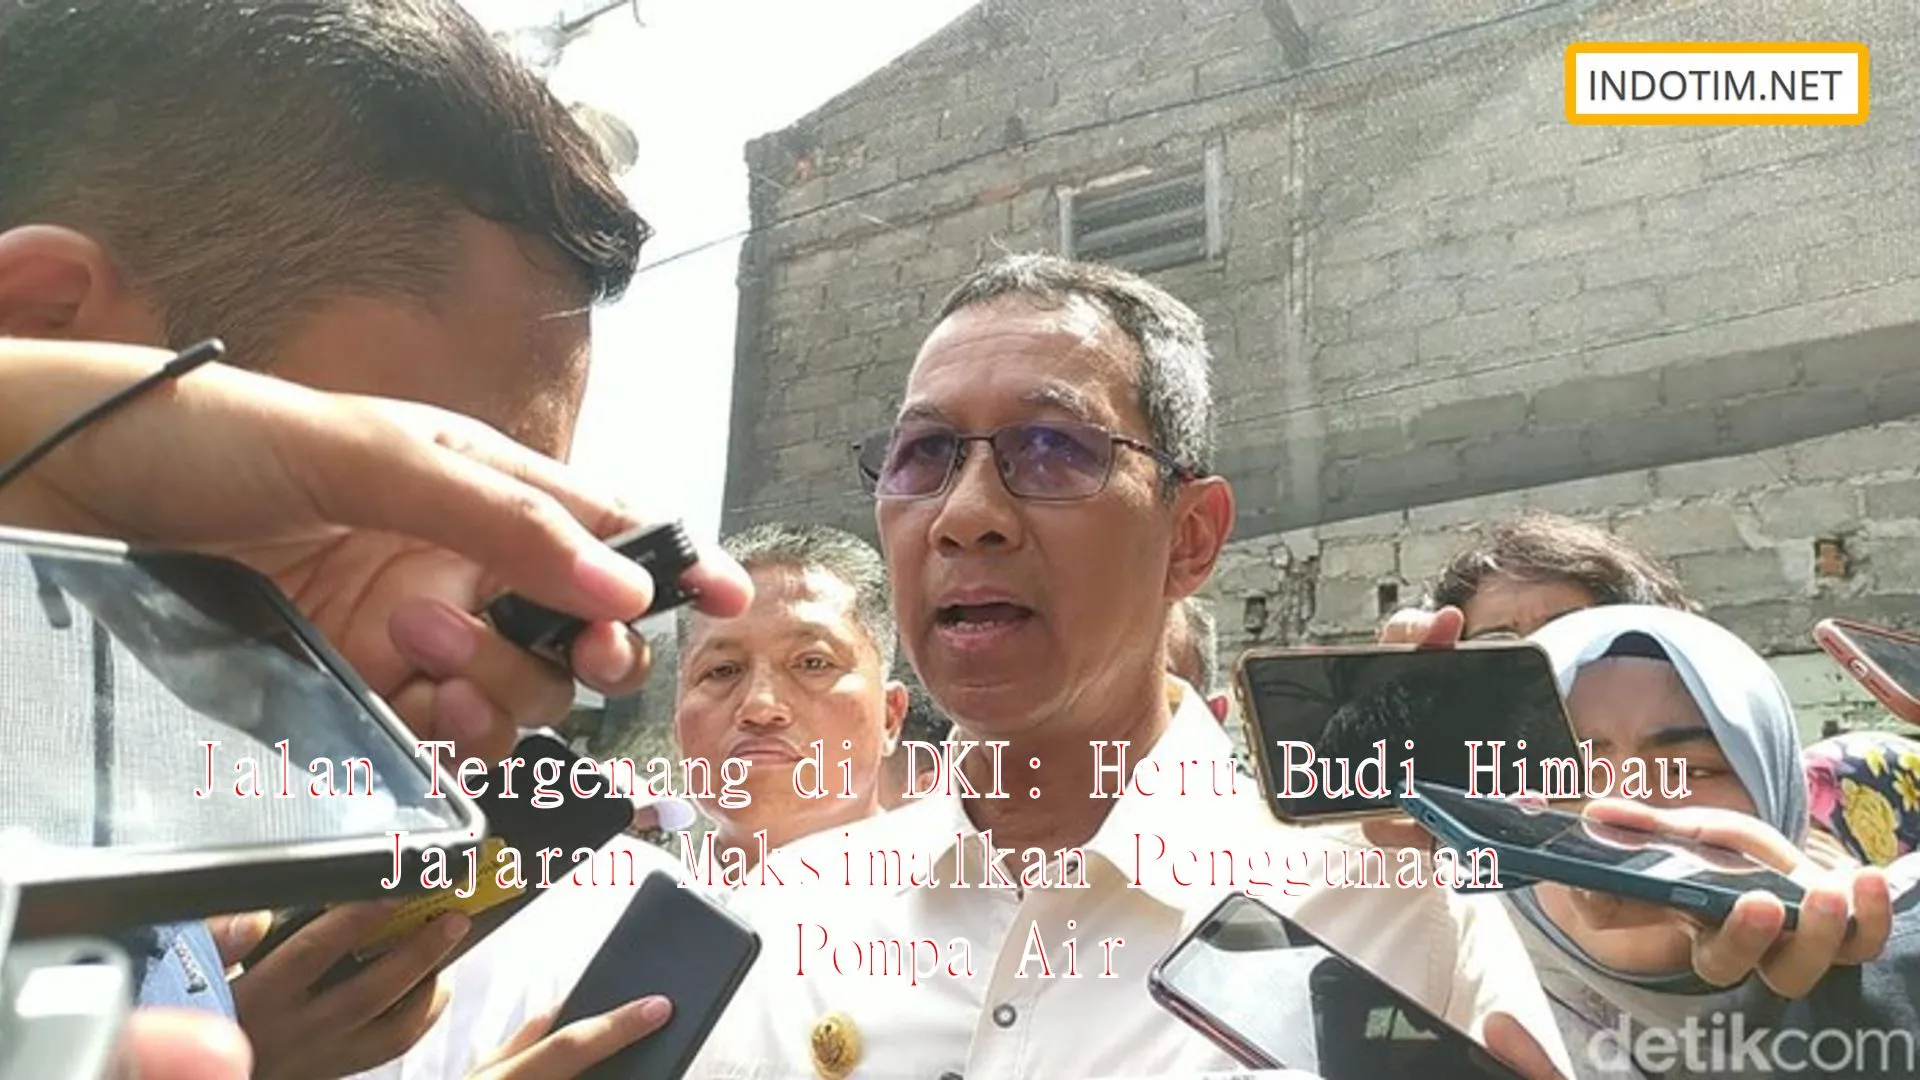 Jalan Tergenang di DKI: Heru Budi Himbau Jajaran Maksimalkan Penggunaan Pompa Air